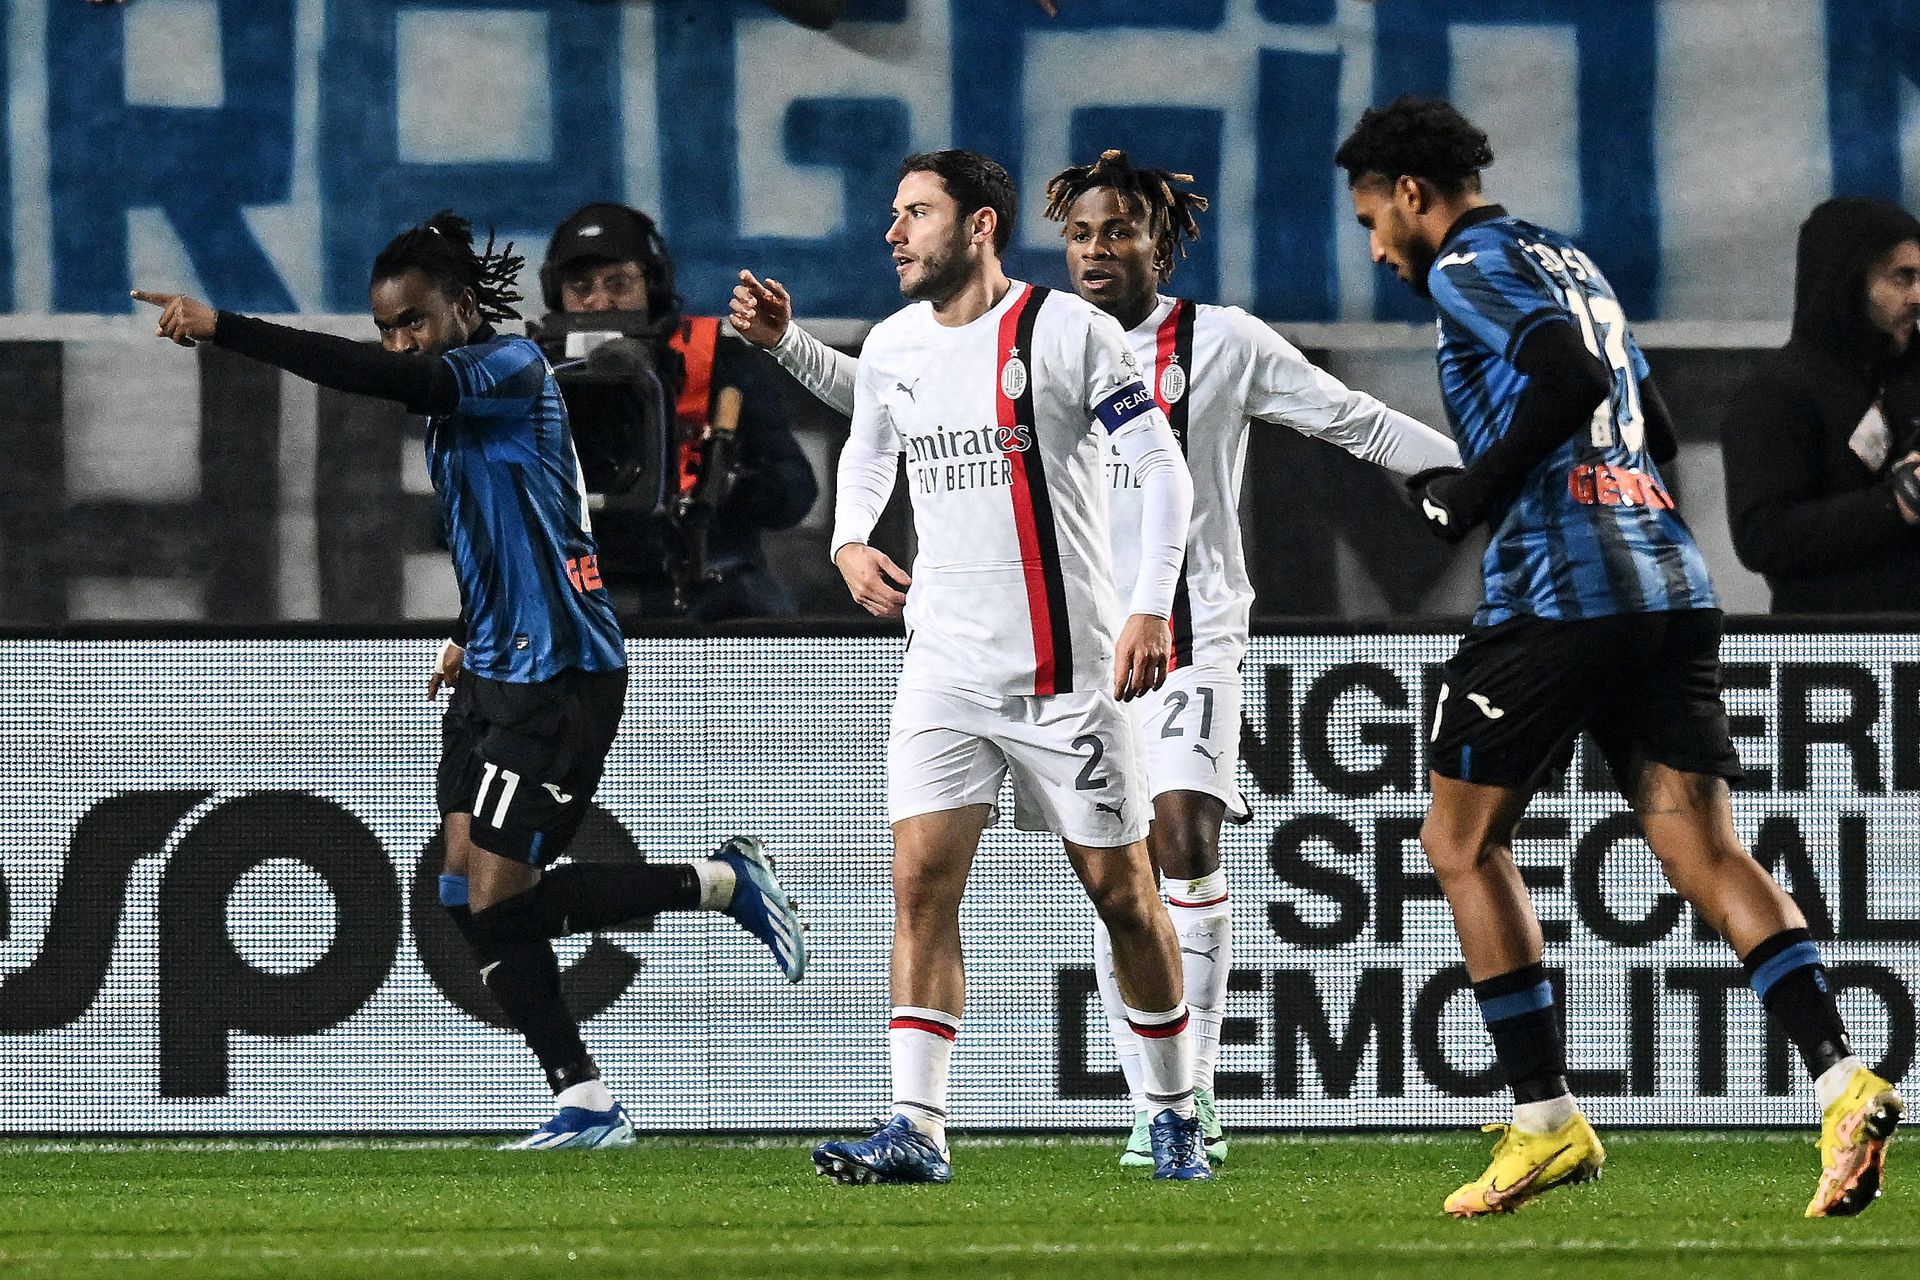 Pontapé na crise: Atalanta vence jogo dramático frente ao AC Milan 